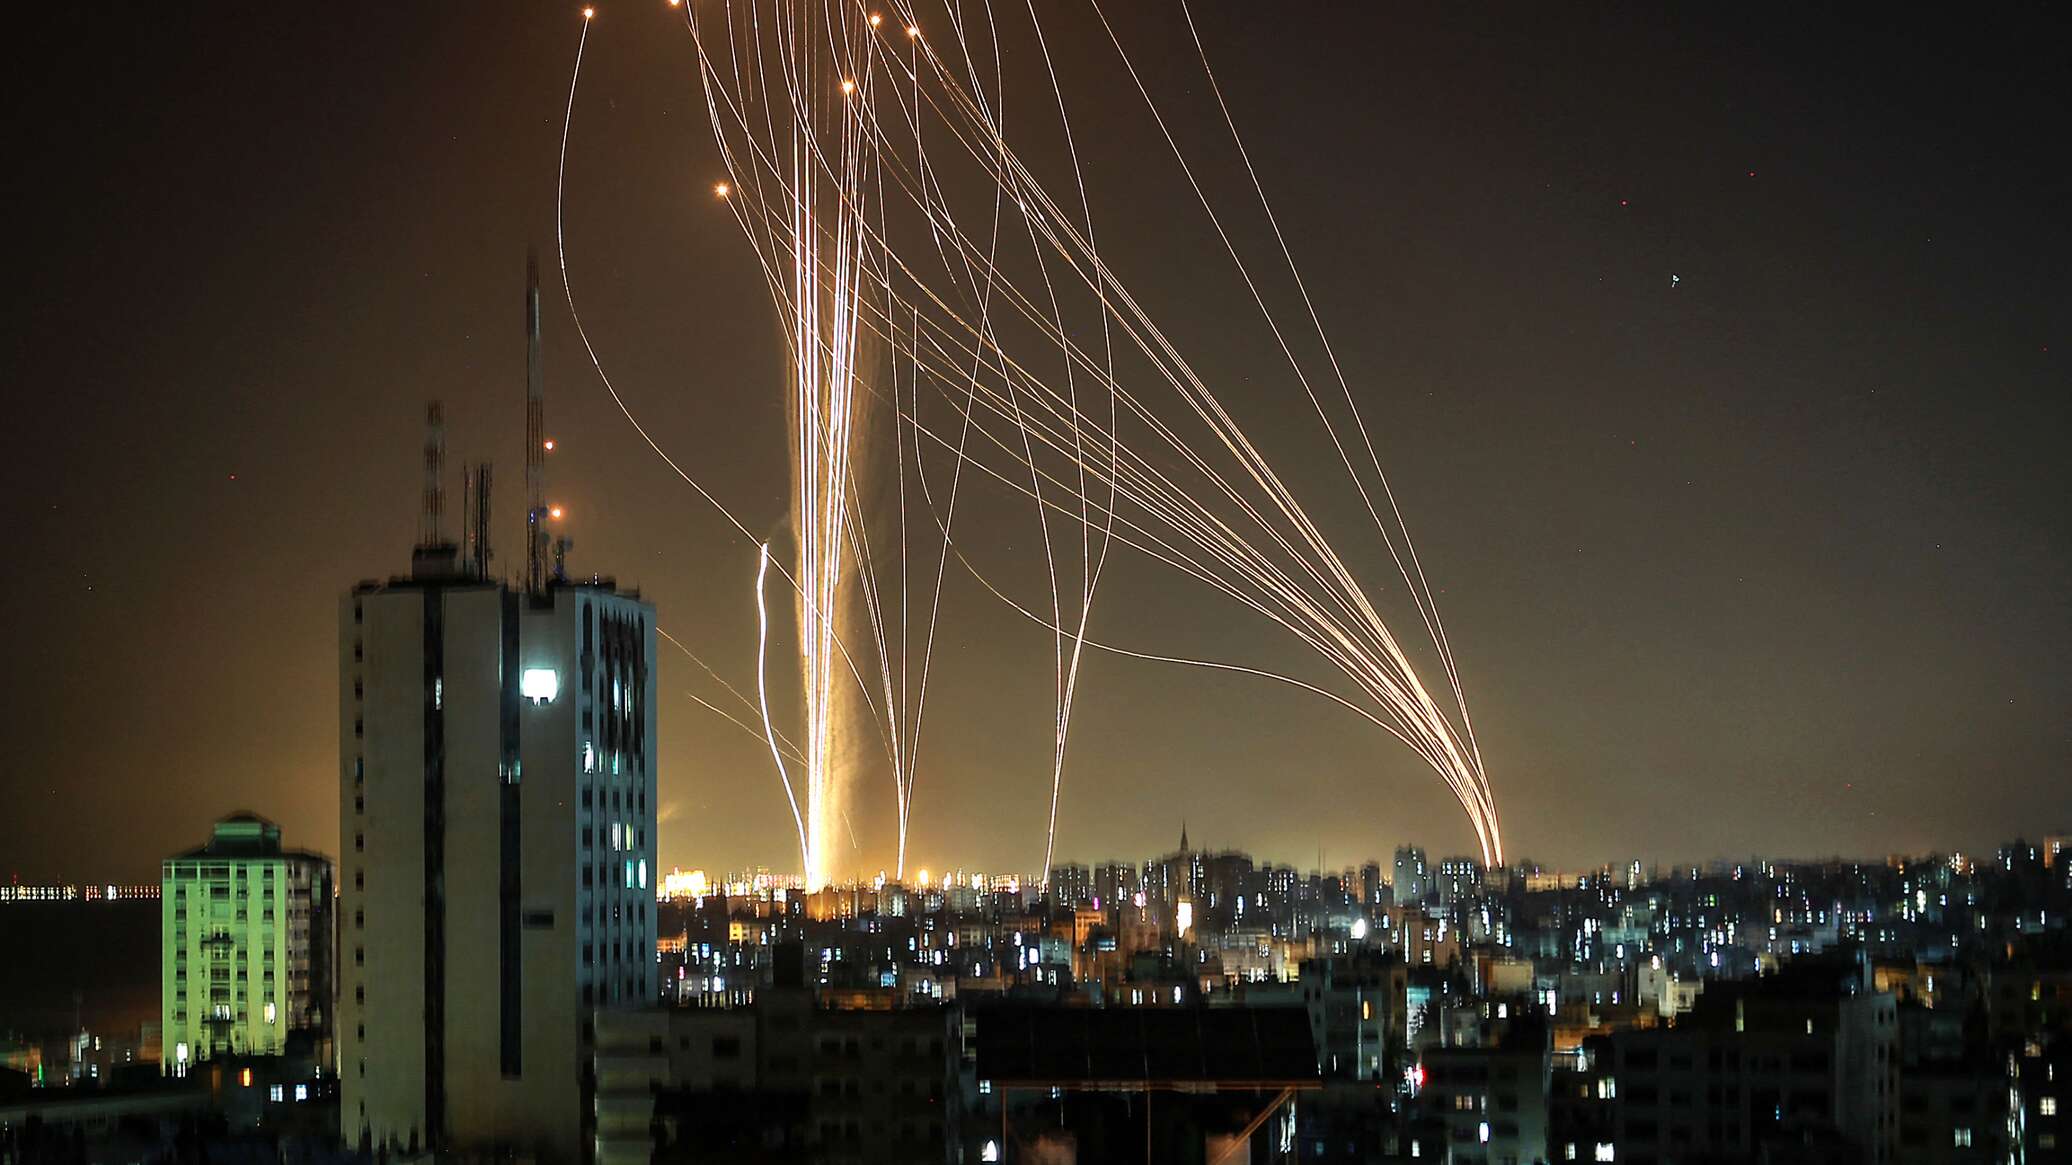 طائرة إسرائيلية تهبط وسط وابل من الصواريخ في مطار بن غوريون... فيديو